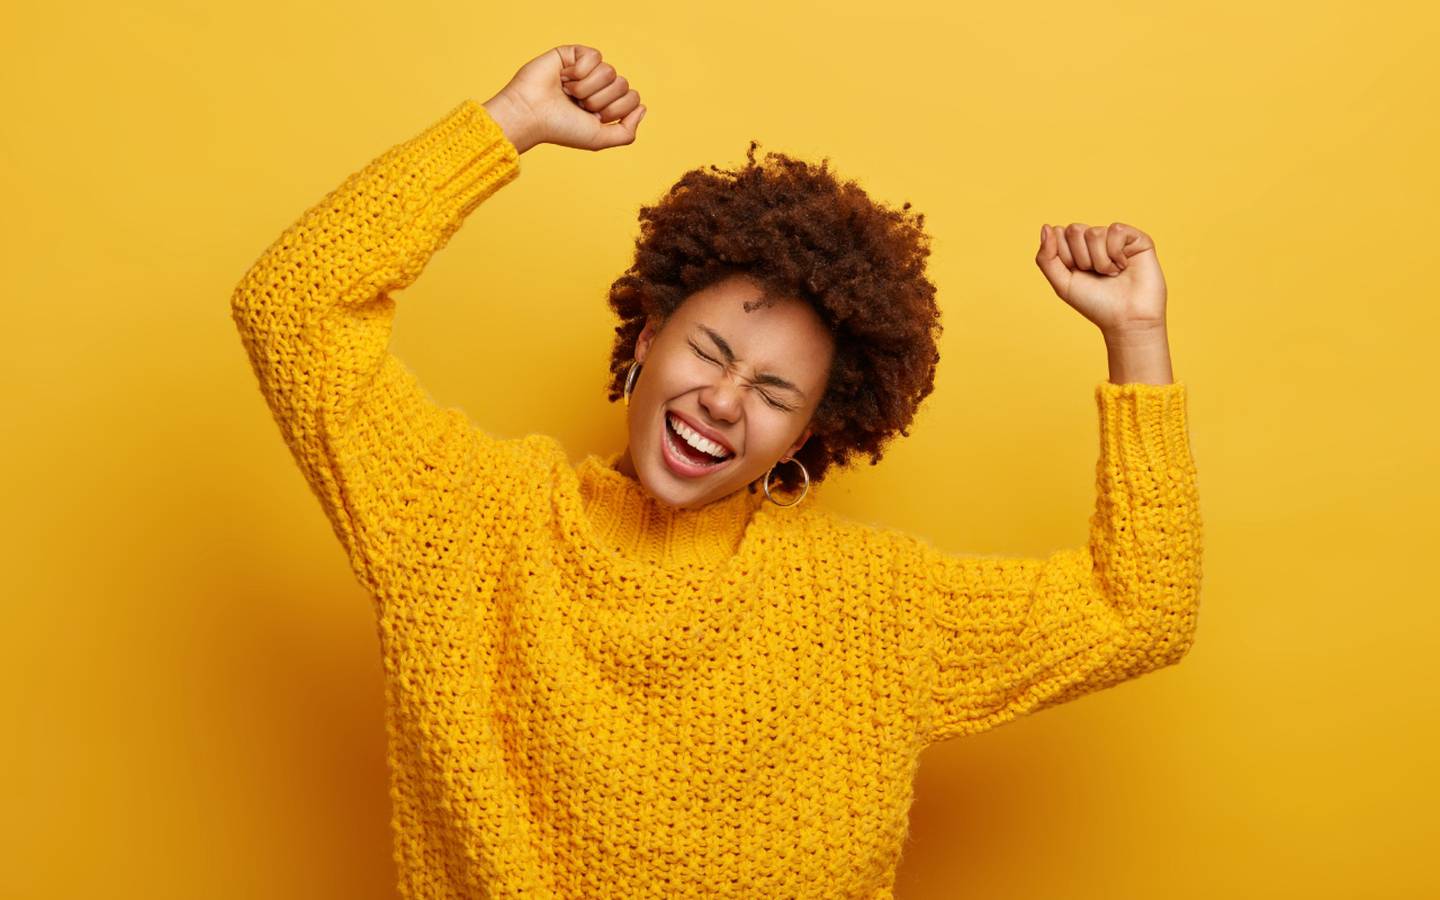 Mujer afrodescendiente de pelo rizado y corto con las manos levantadas en señal de trunfo y con una gran sonrisa de alegría en el rostro. Lleva un sweter amarillo sobre un fondo del mismo color.